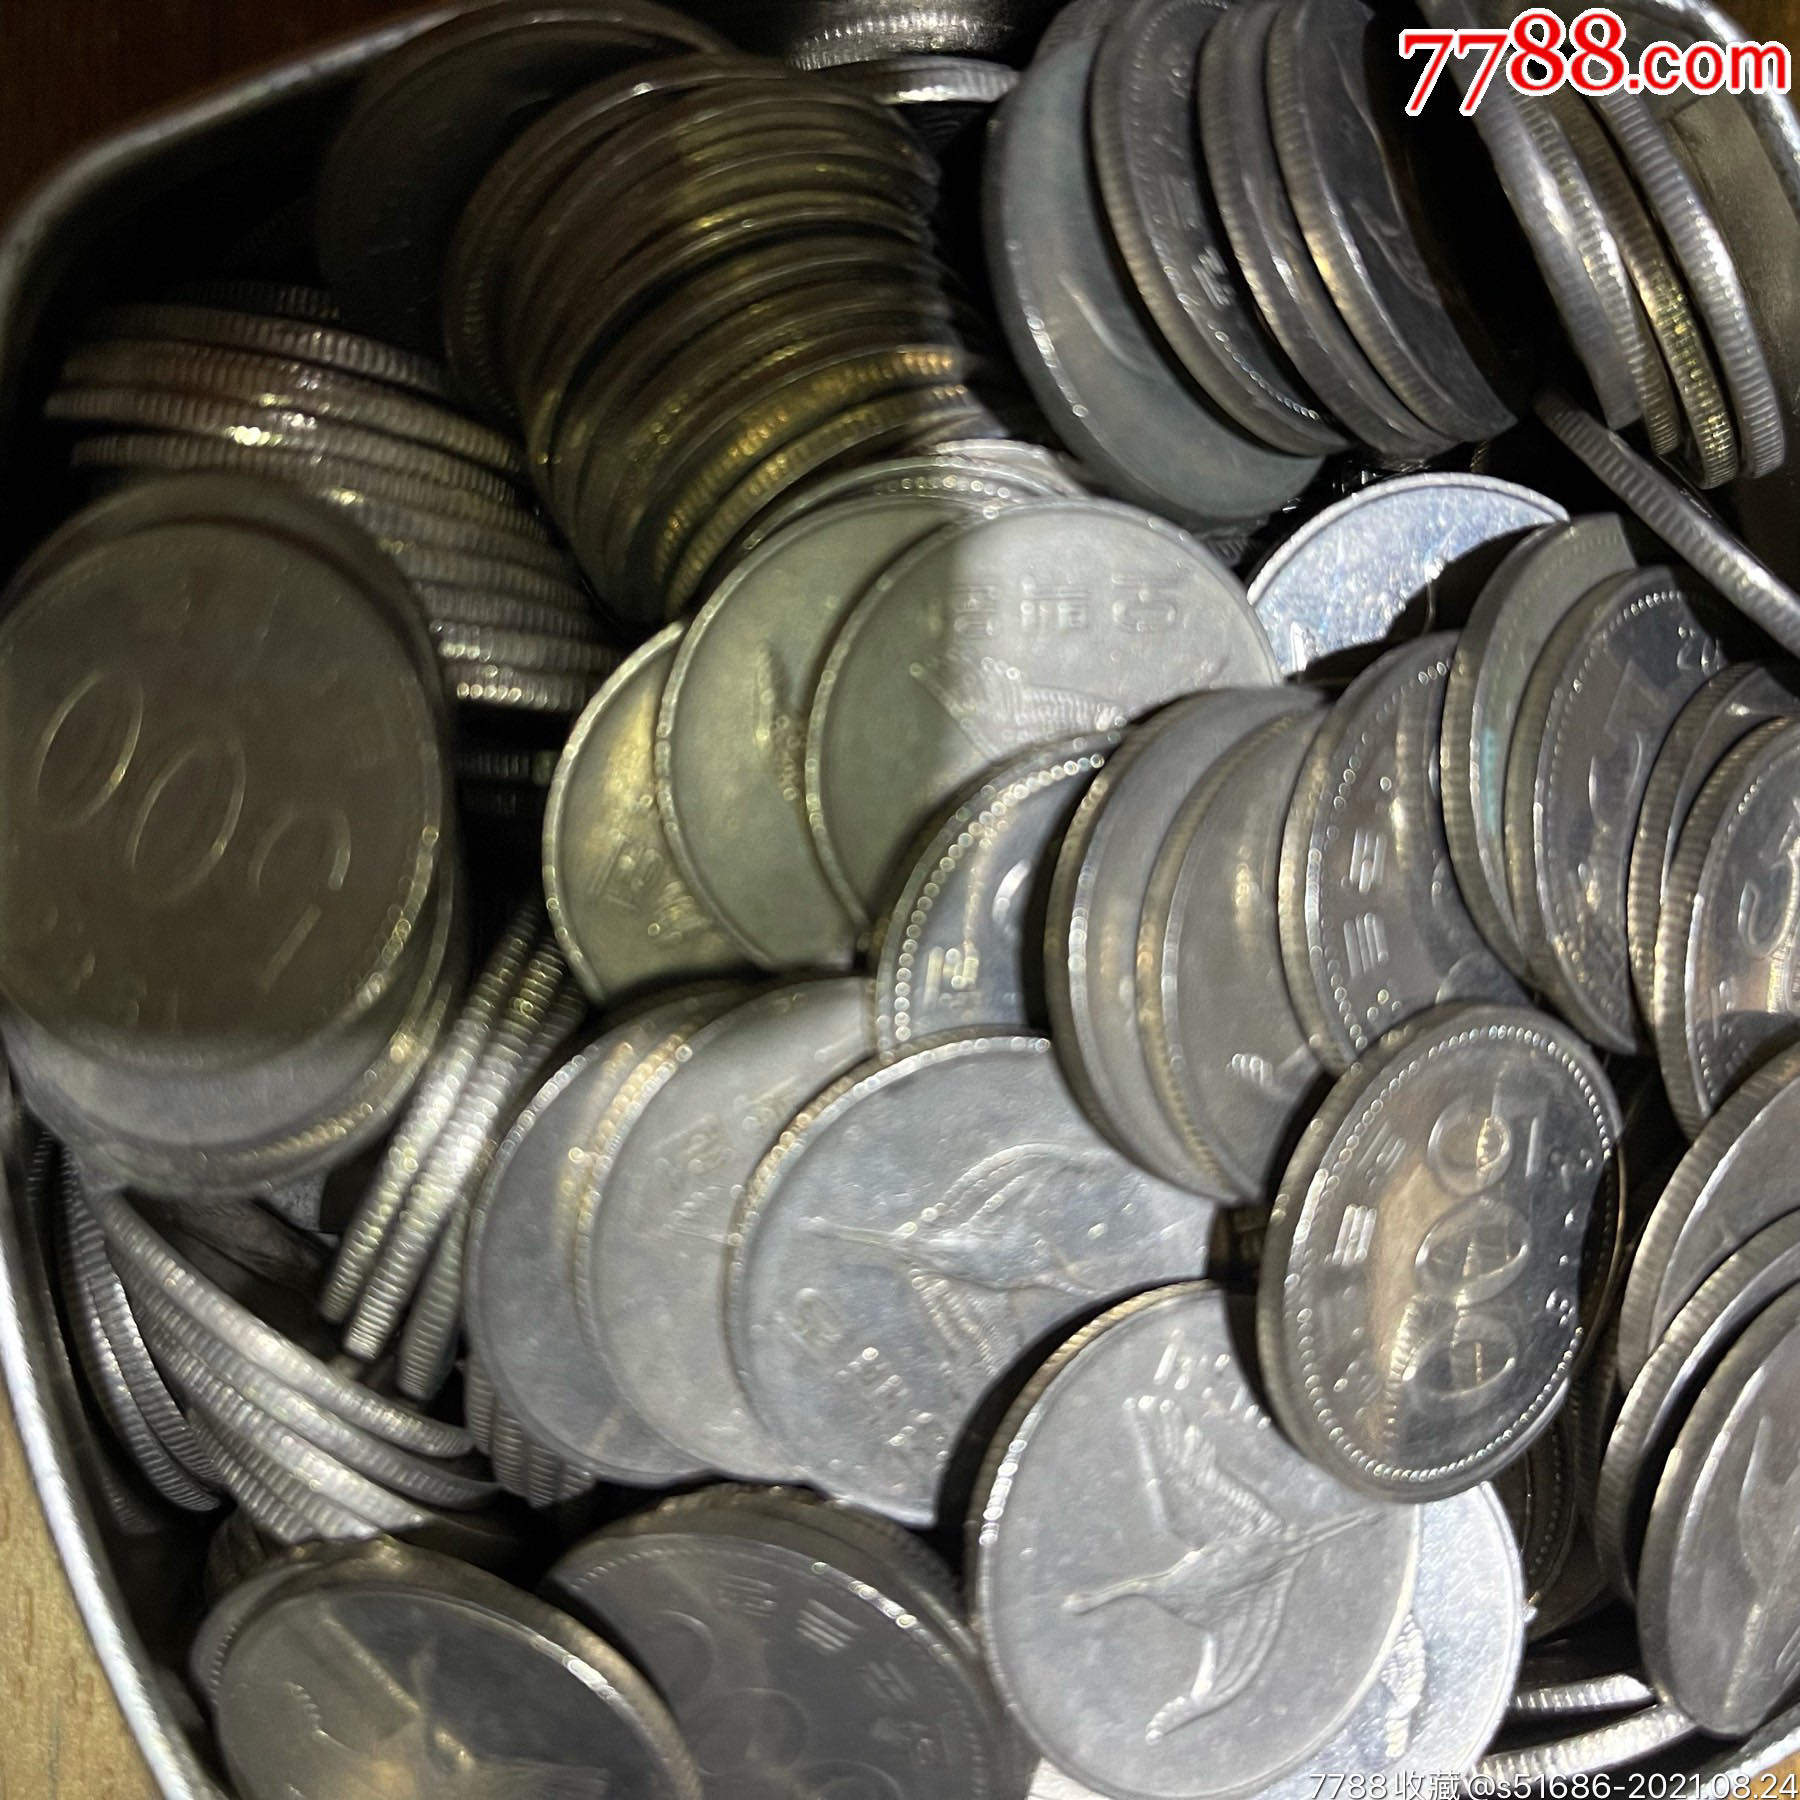 500韩元硬币图片图片